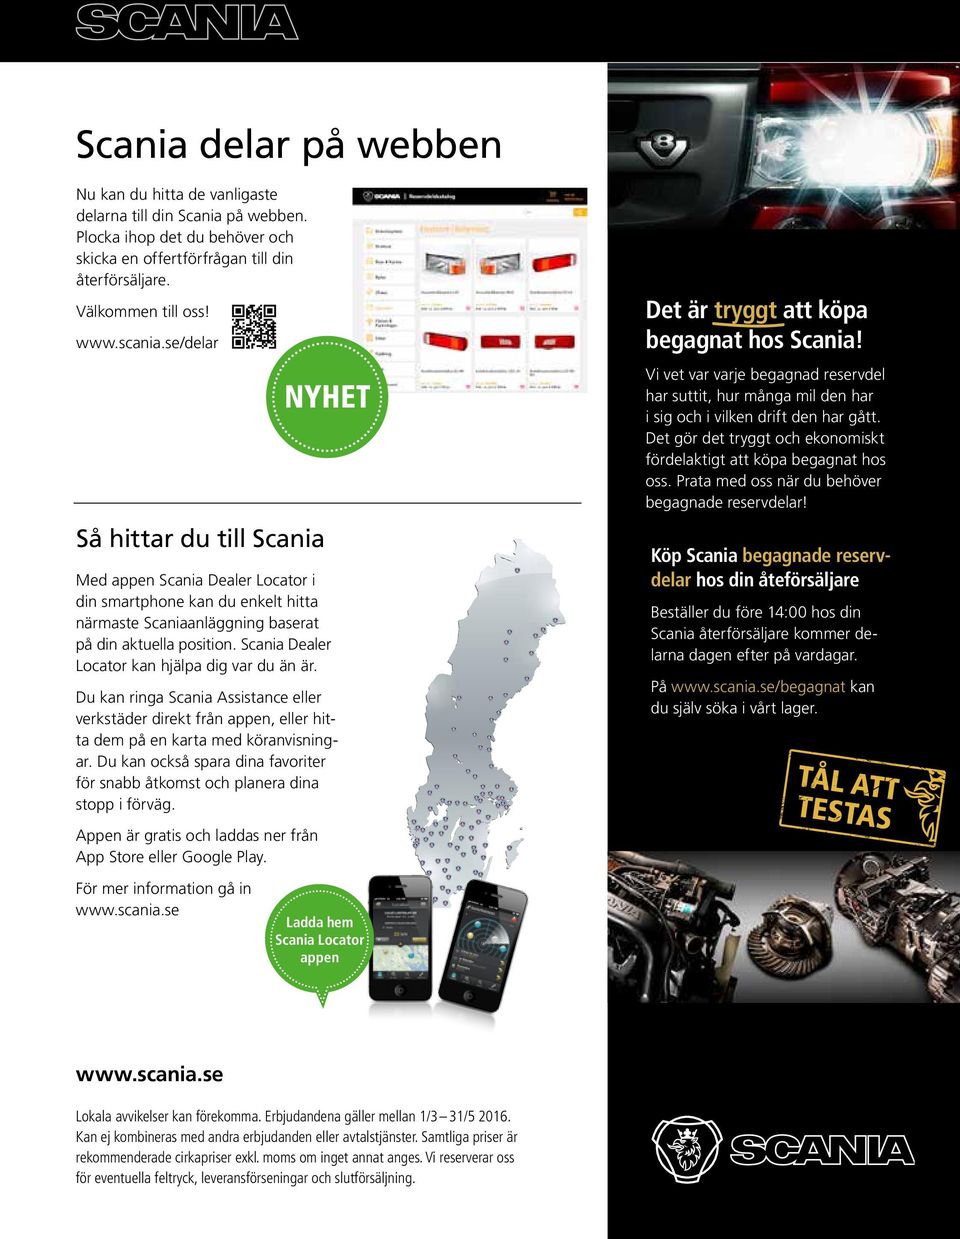 se/delar Så hittar du till Scania Med appen Scania Dealer Locator i din smartphone kan du enkelt hitta närmaste Scaniaanläggning baserat på din aktuella position.